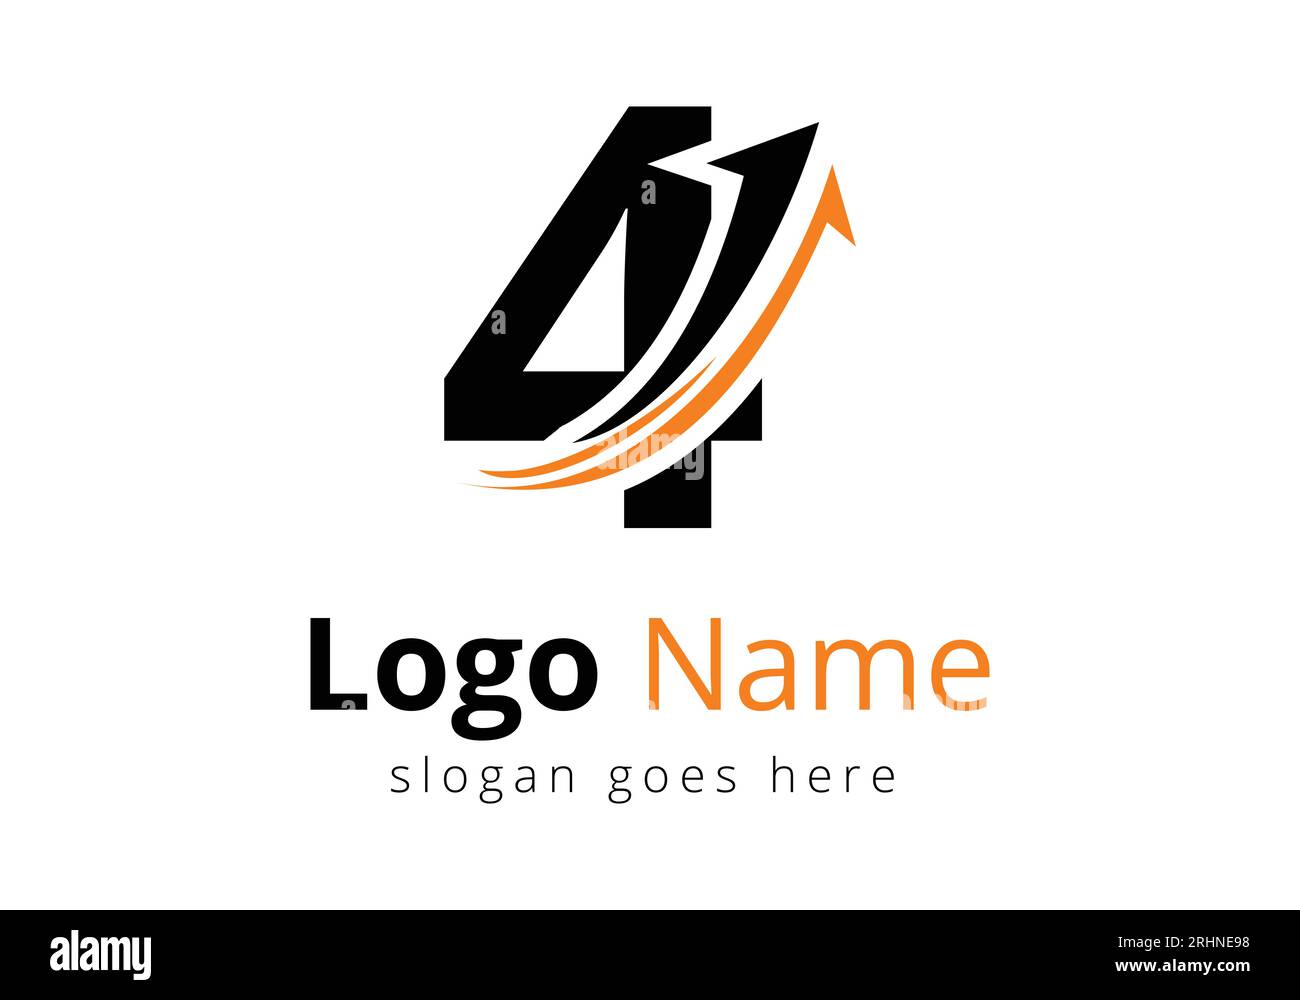 Logo de financement avec concept de 4 lettres. Concept de logo financier ou de réussite. Logo pour l'entreprise comptable et l'identité de l'entreprise Illustration de Vecteur